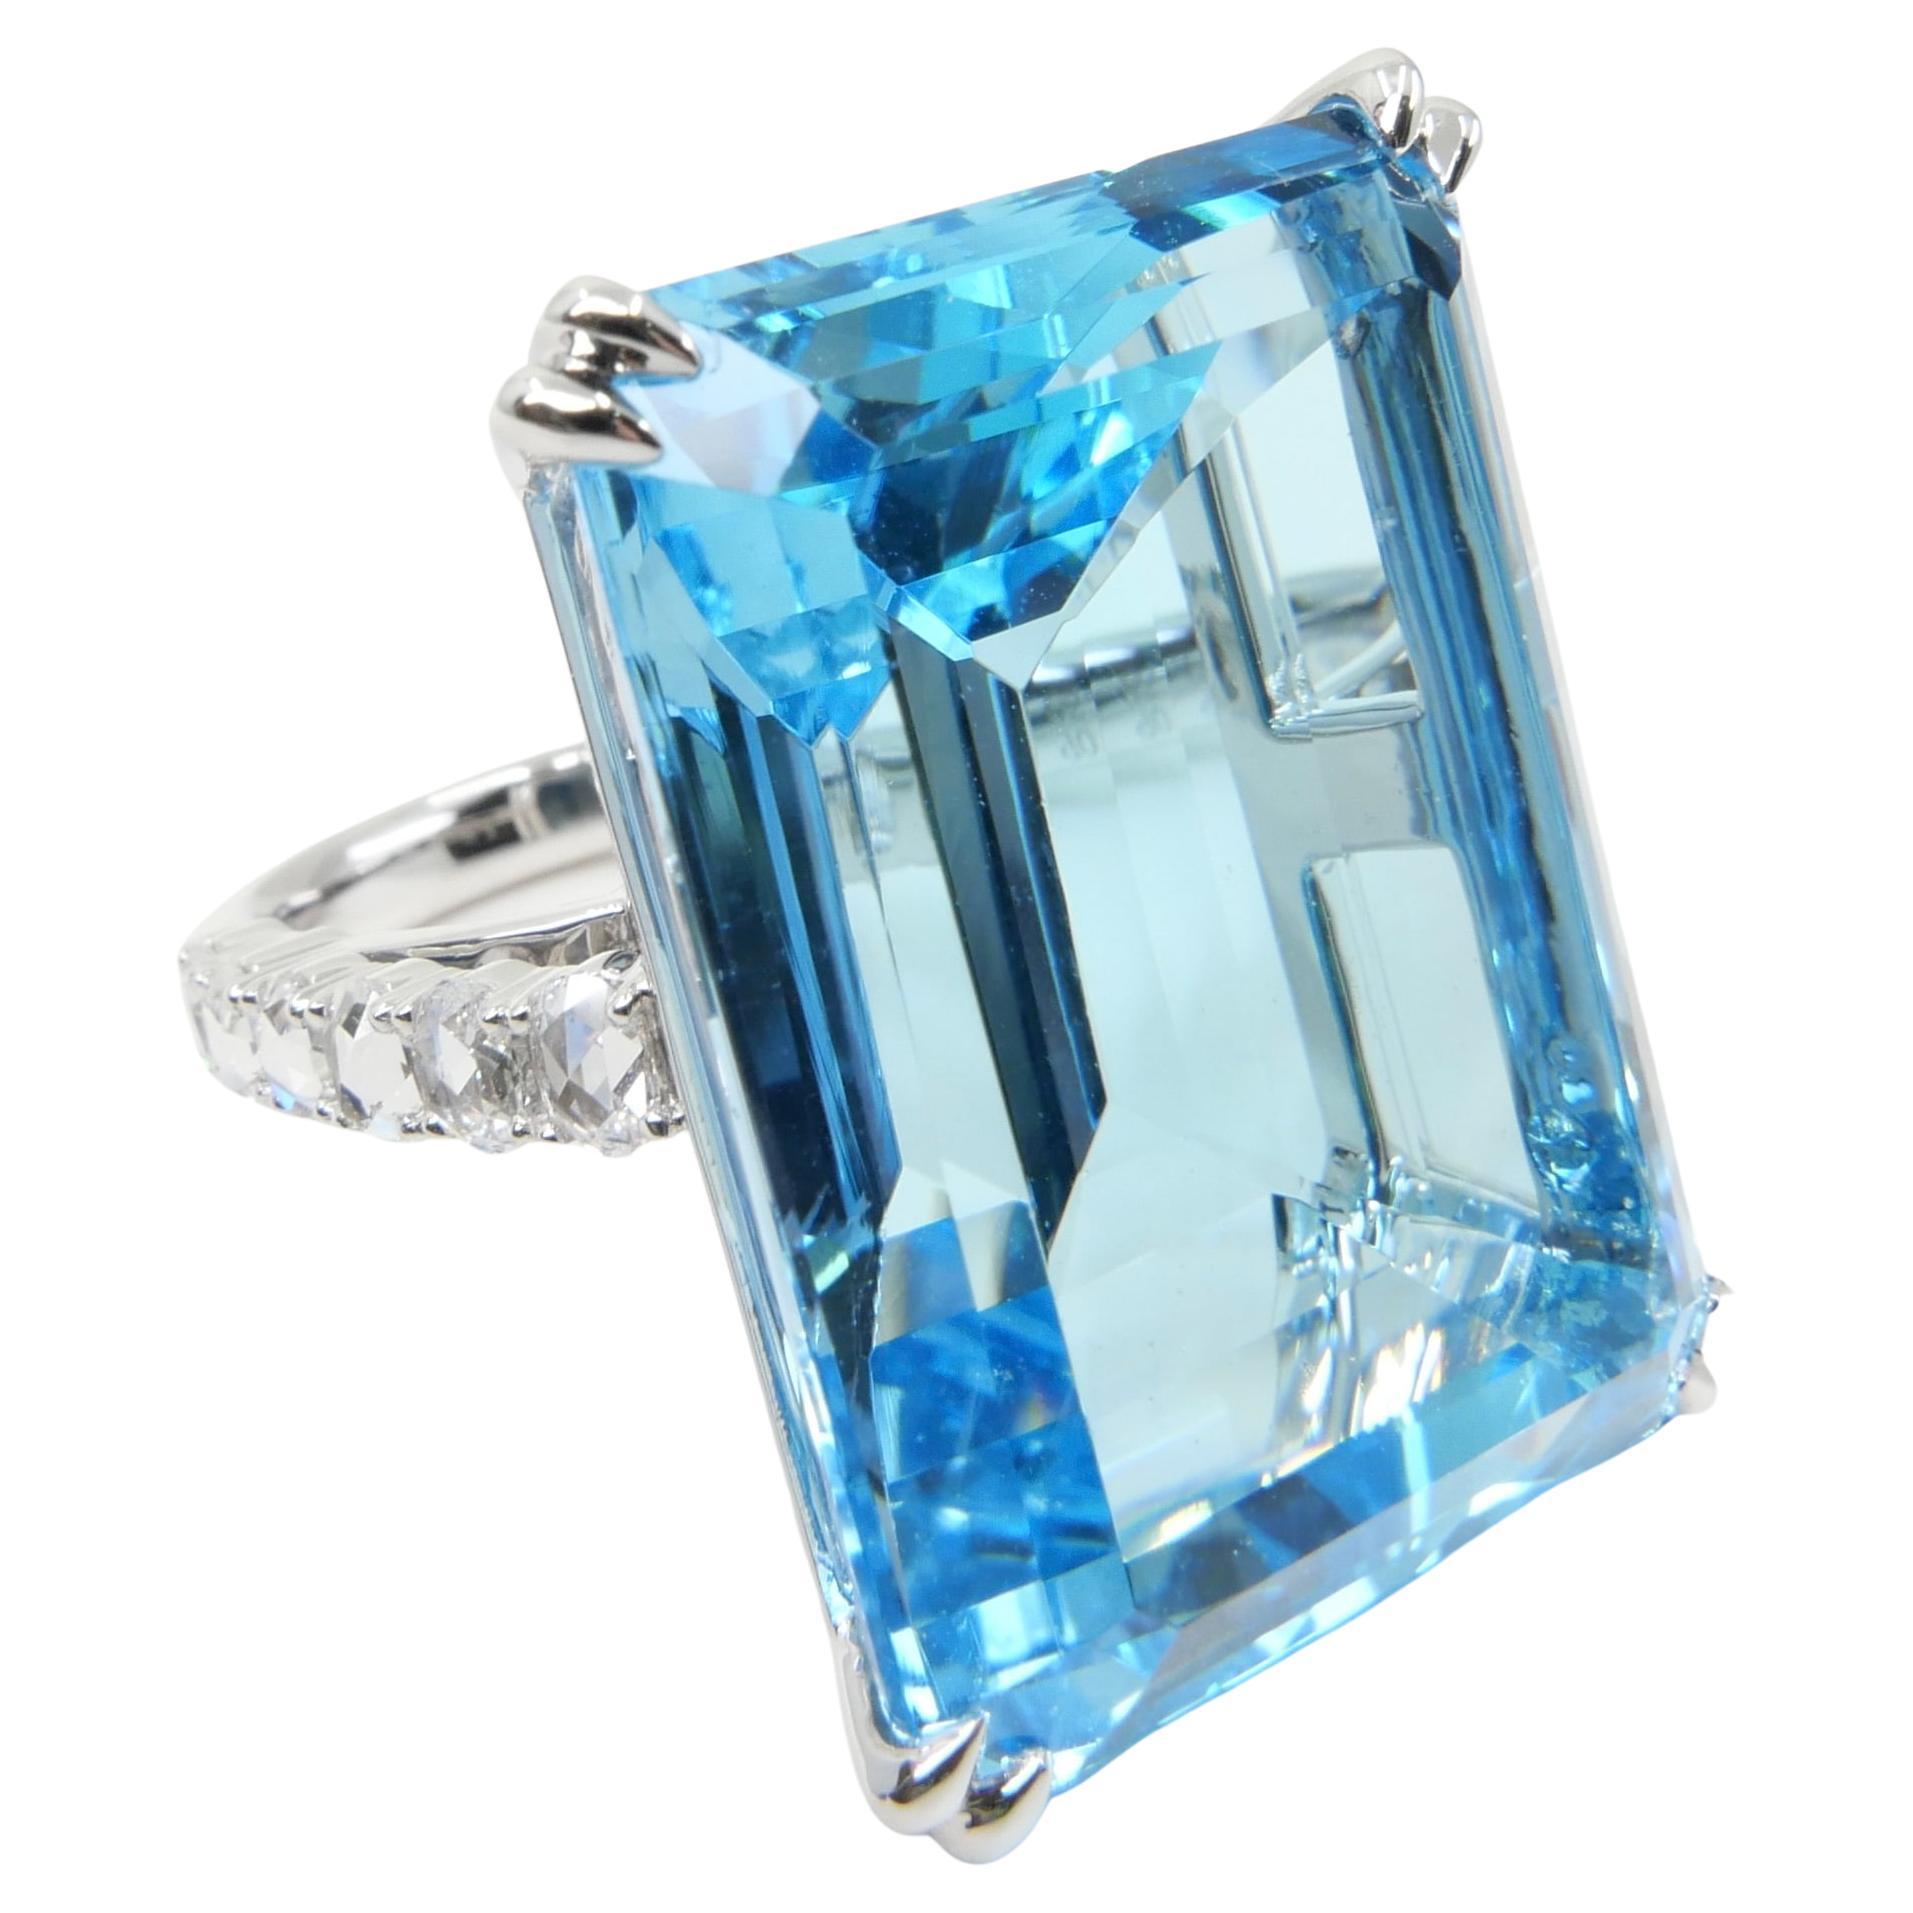 Substantielle bague cocktail en topaze bleue taille en escalier et diamants taille rose 62 carats